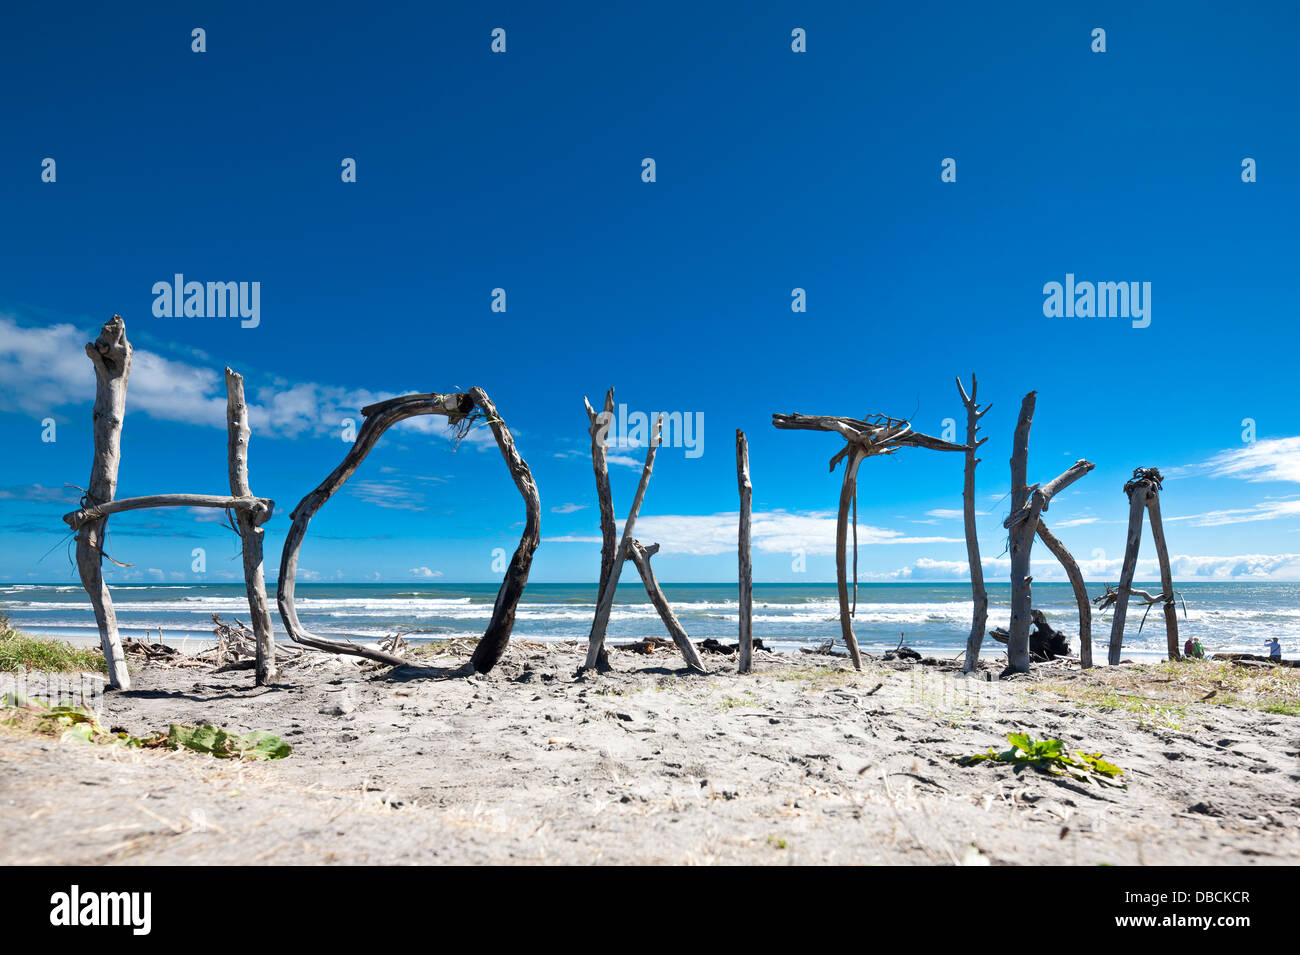 Hokitika. Driftwood sculpture ; le nom de la ville de signer le bâtiment de bois flotté trouvé sur la plage de Hokitika, île du Sud, Nouvelle-Zélande Banque D'Images